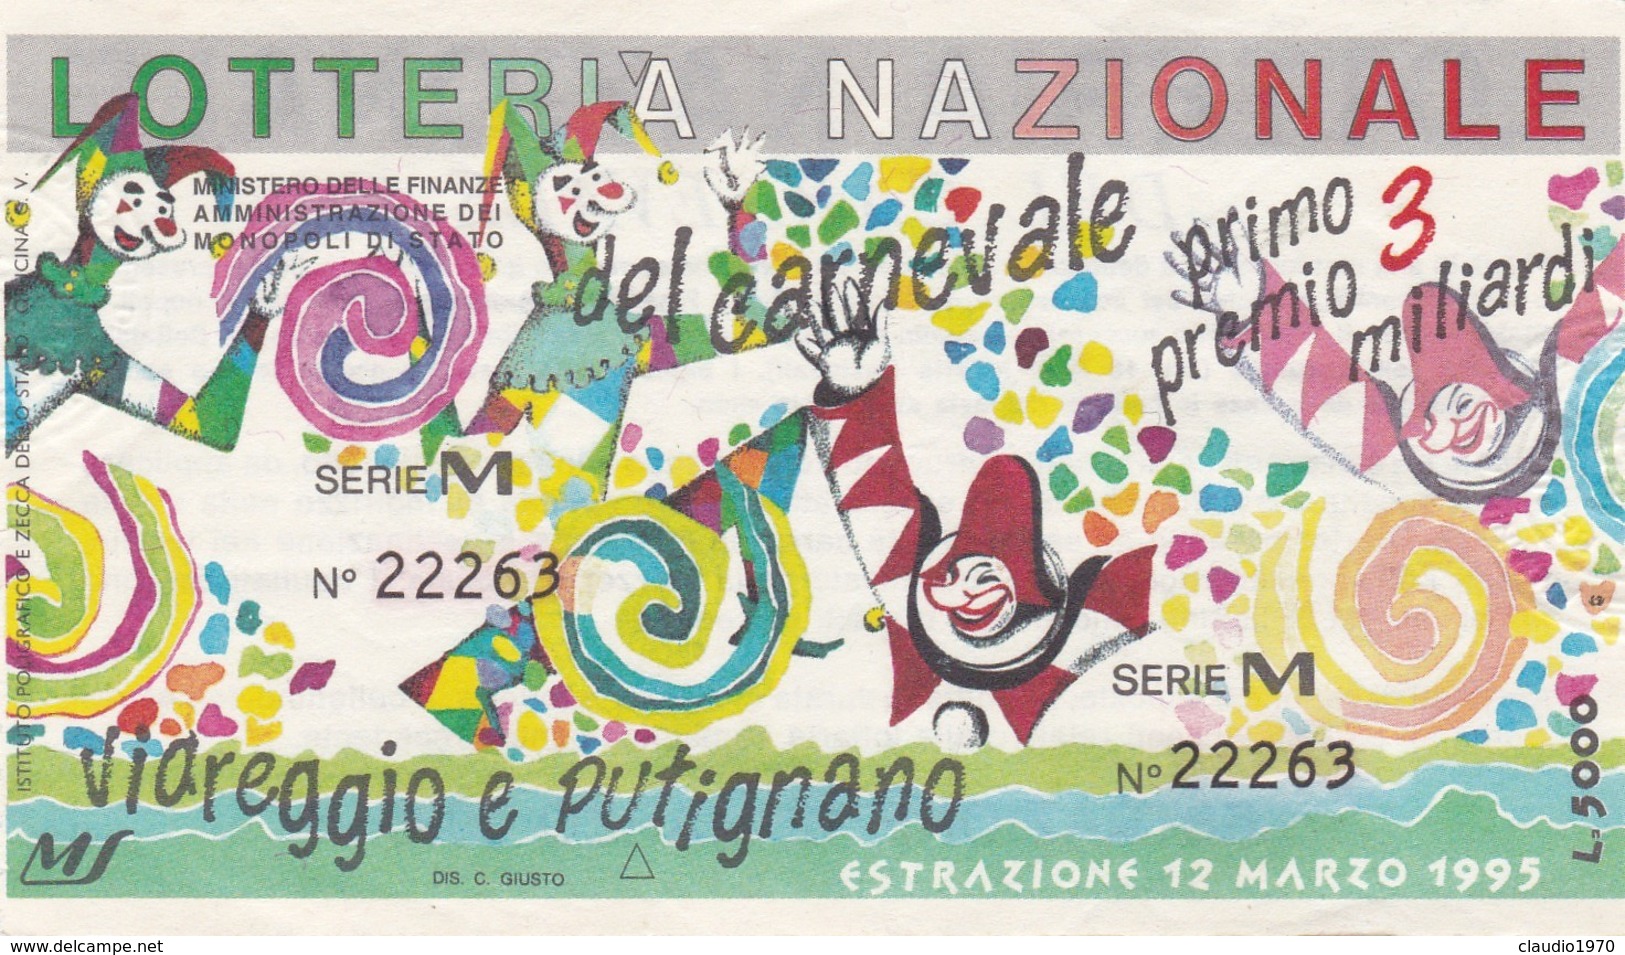 BIGLIETTO - DELLA LOTTERIA  - NAZIONALE DEL CARNAVALE- VIAREGGIO E PUTIGNANO 1995 - Biglietti Della Lotteria